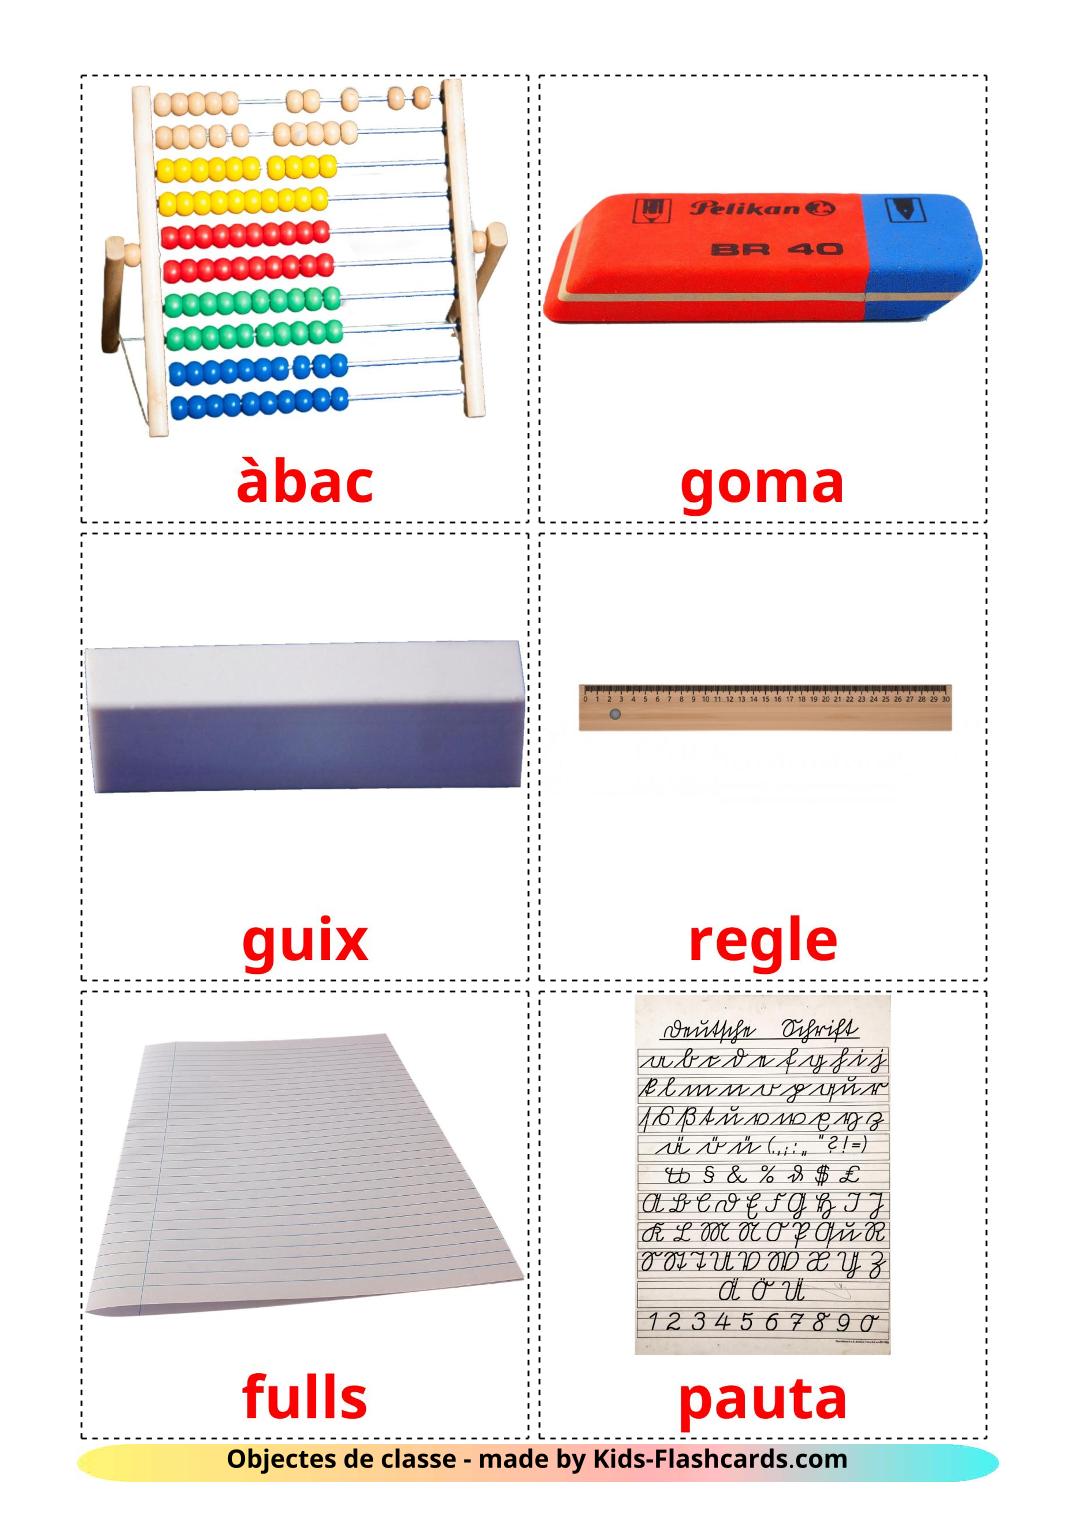 Objetos de sala de aula - 36 Flashcards catalãoes gratuitos para impressão